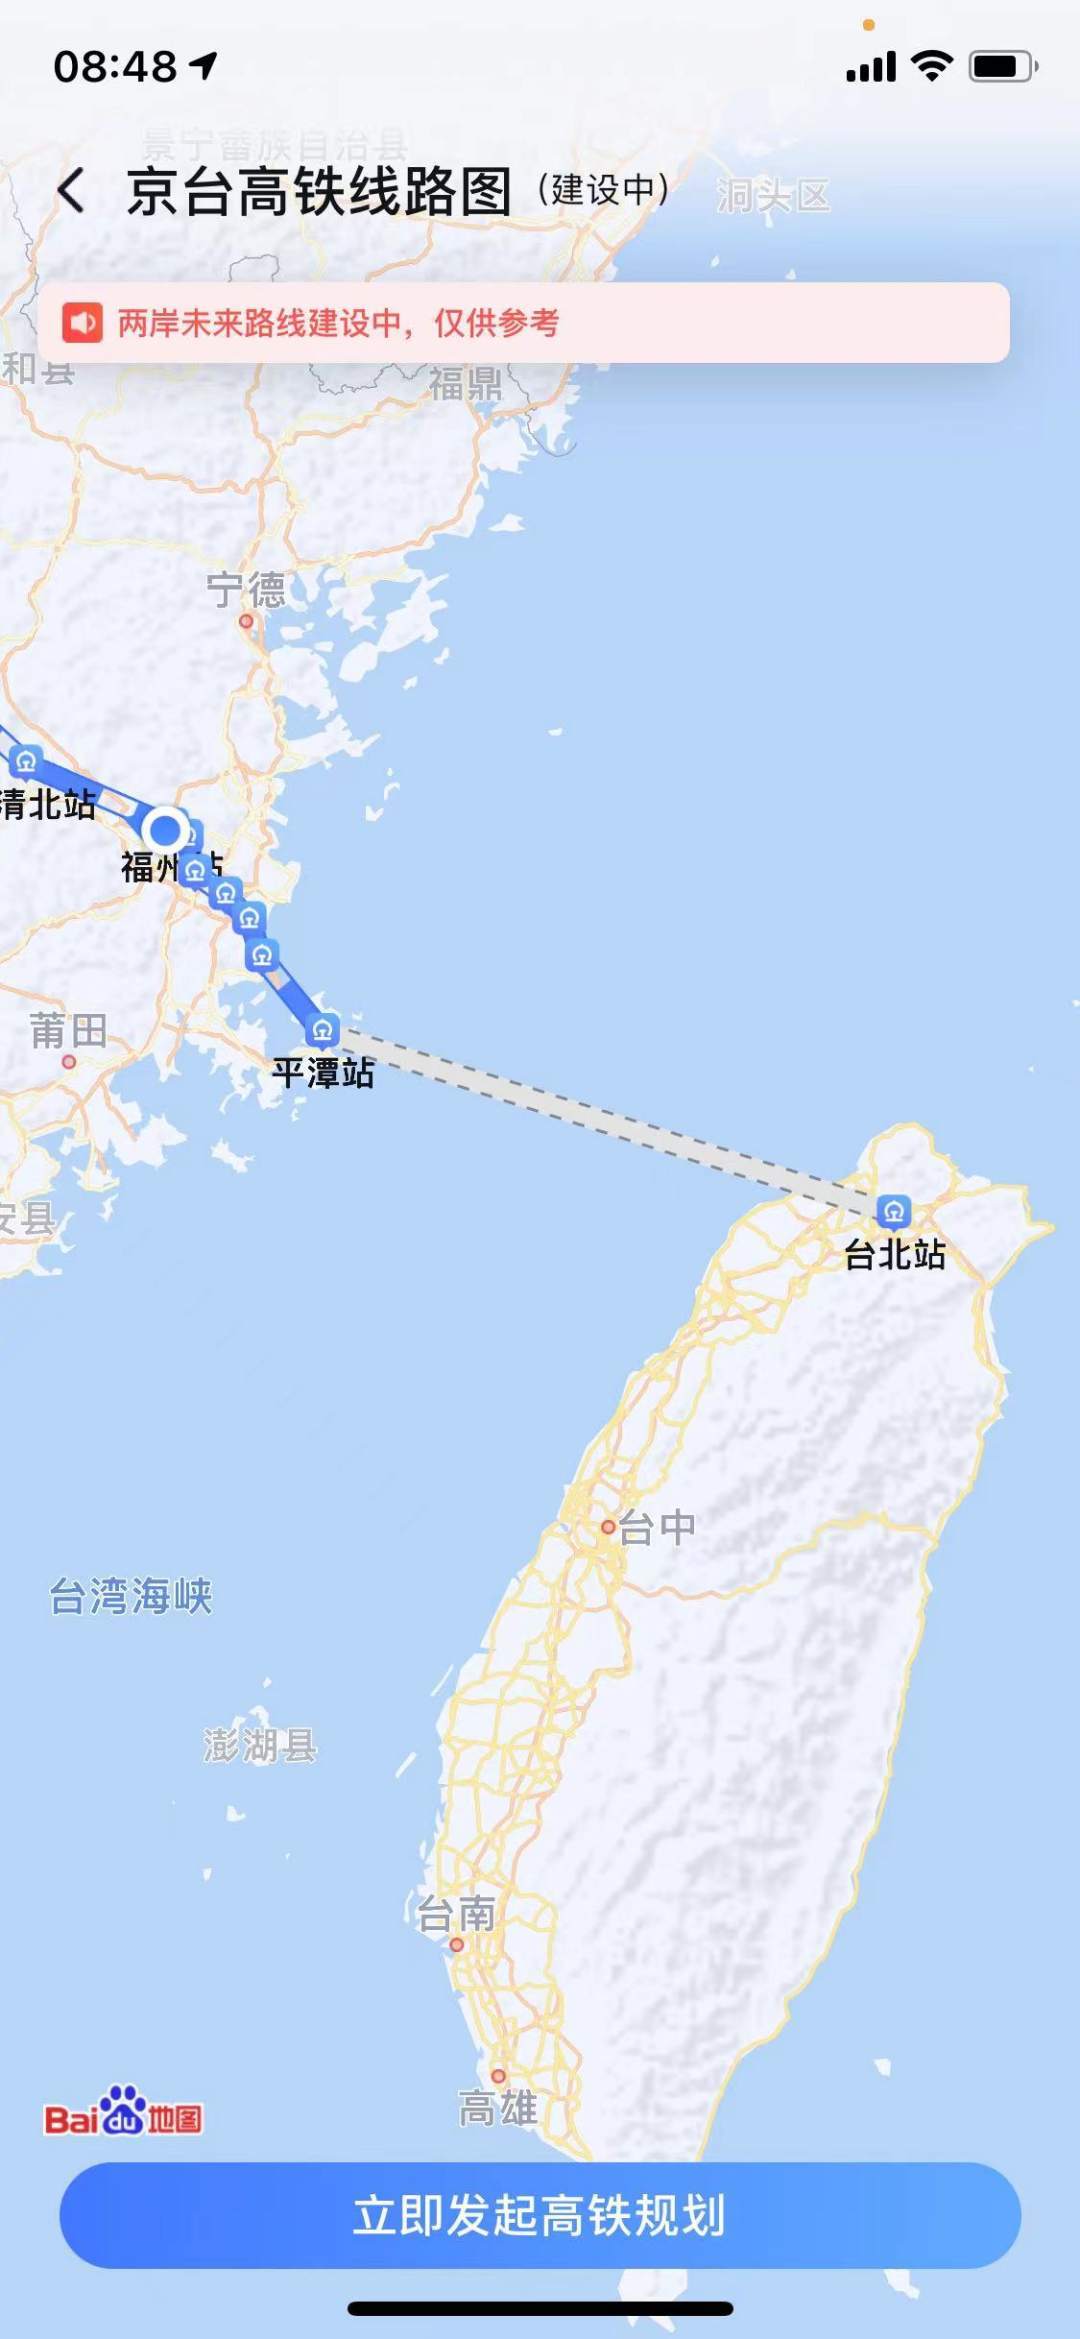 祖国大陆离台湾最近的地方,平潭在哪儿?